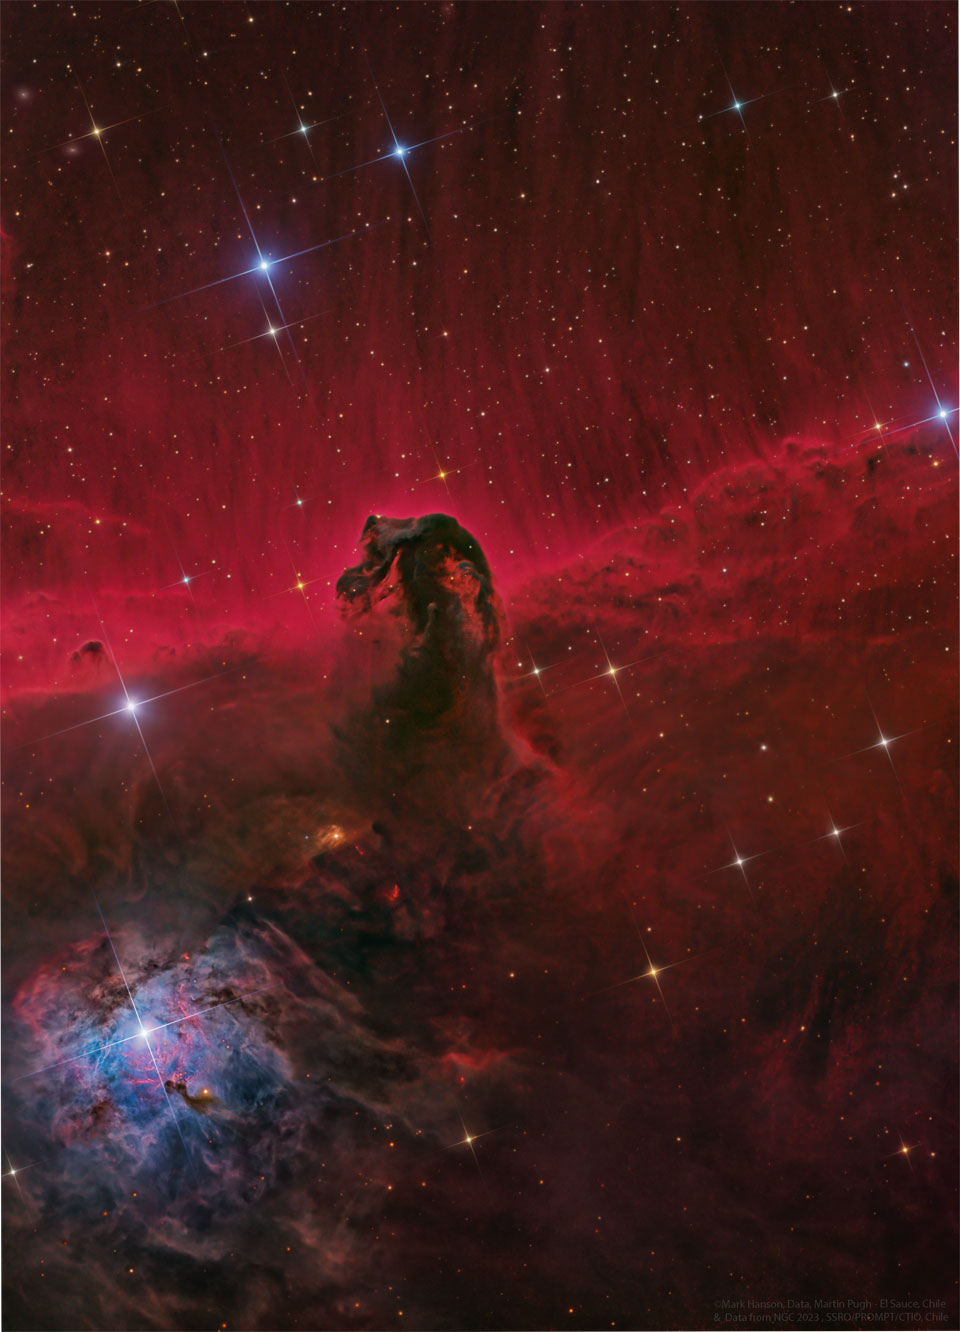 Na czerwonym tle widoczna jest ciemna mgławica przypominająca kształtem głowę konia. 
Całe zdjęcie wypełnione jest gwiazdami. Więcej szczegółowych informacji w opisie poniżej.